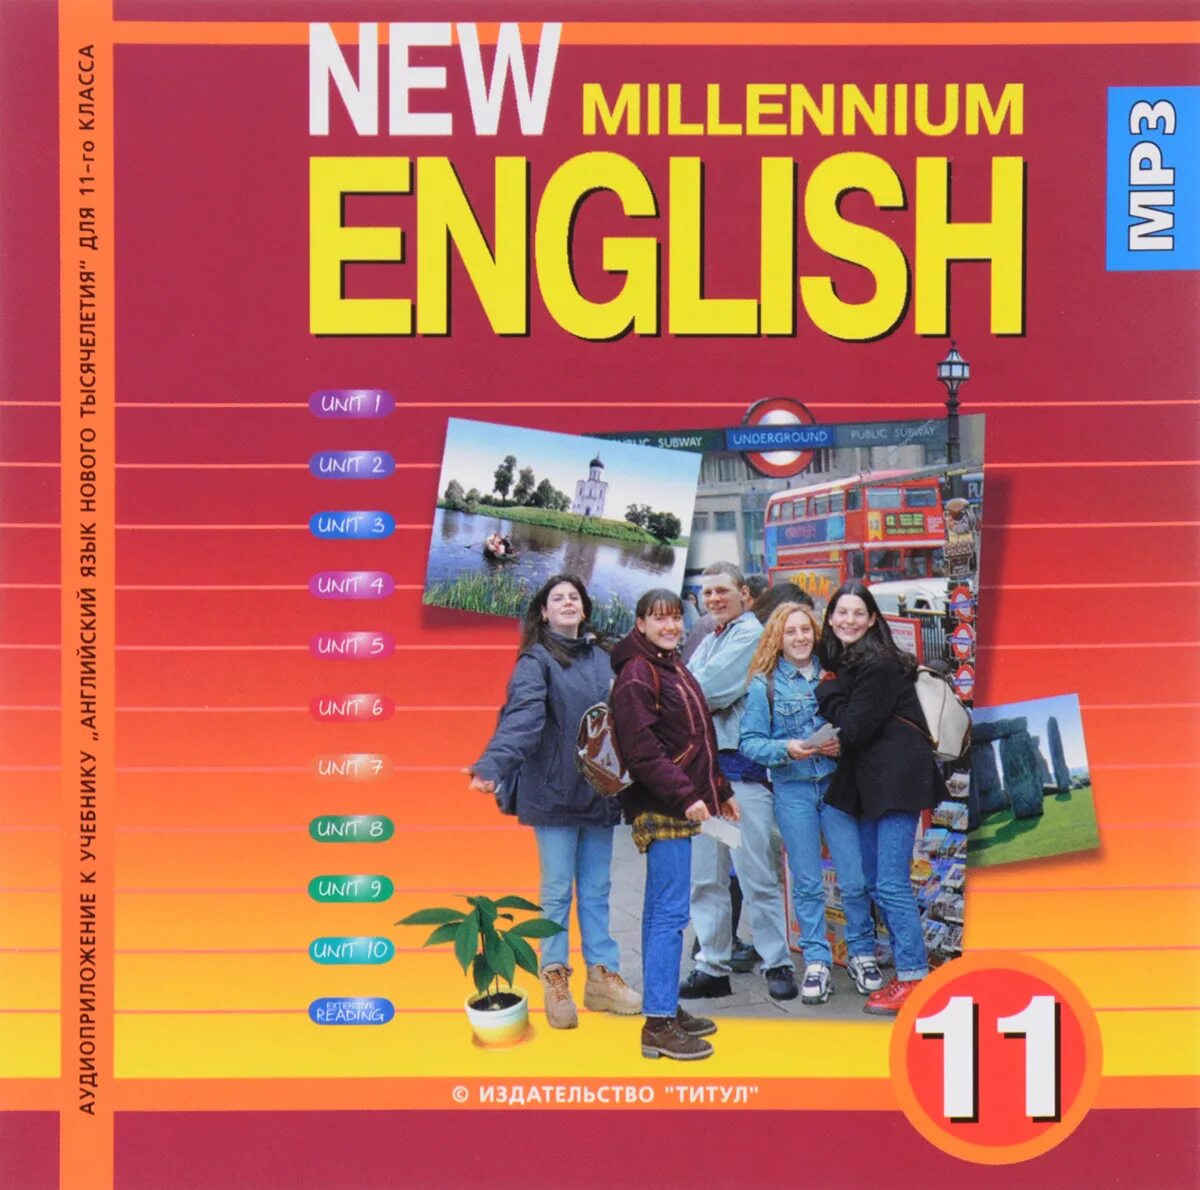 Английский 11 повышенный. Учебник по английскому языку. Миллениум Инглиш. Английский язык. Учебник. New Millennium English 11.